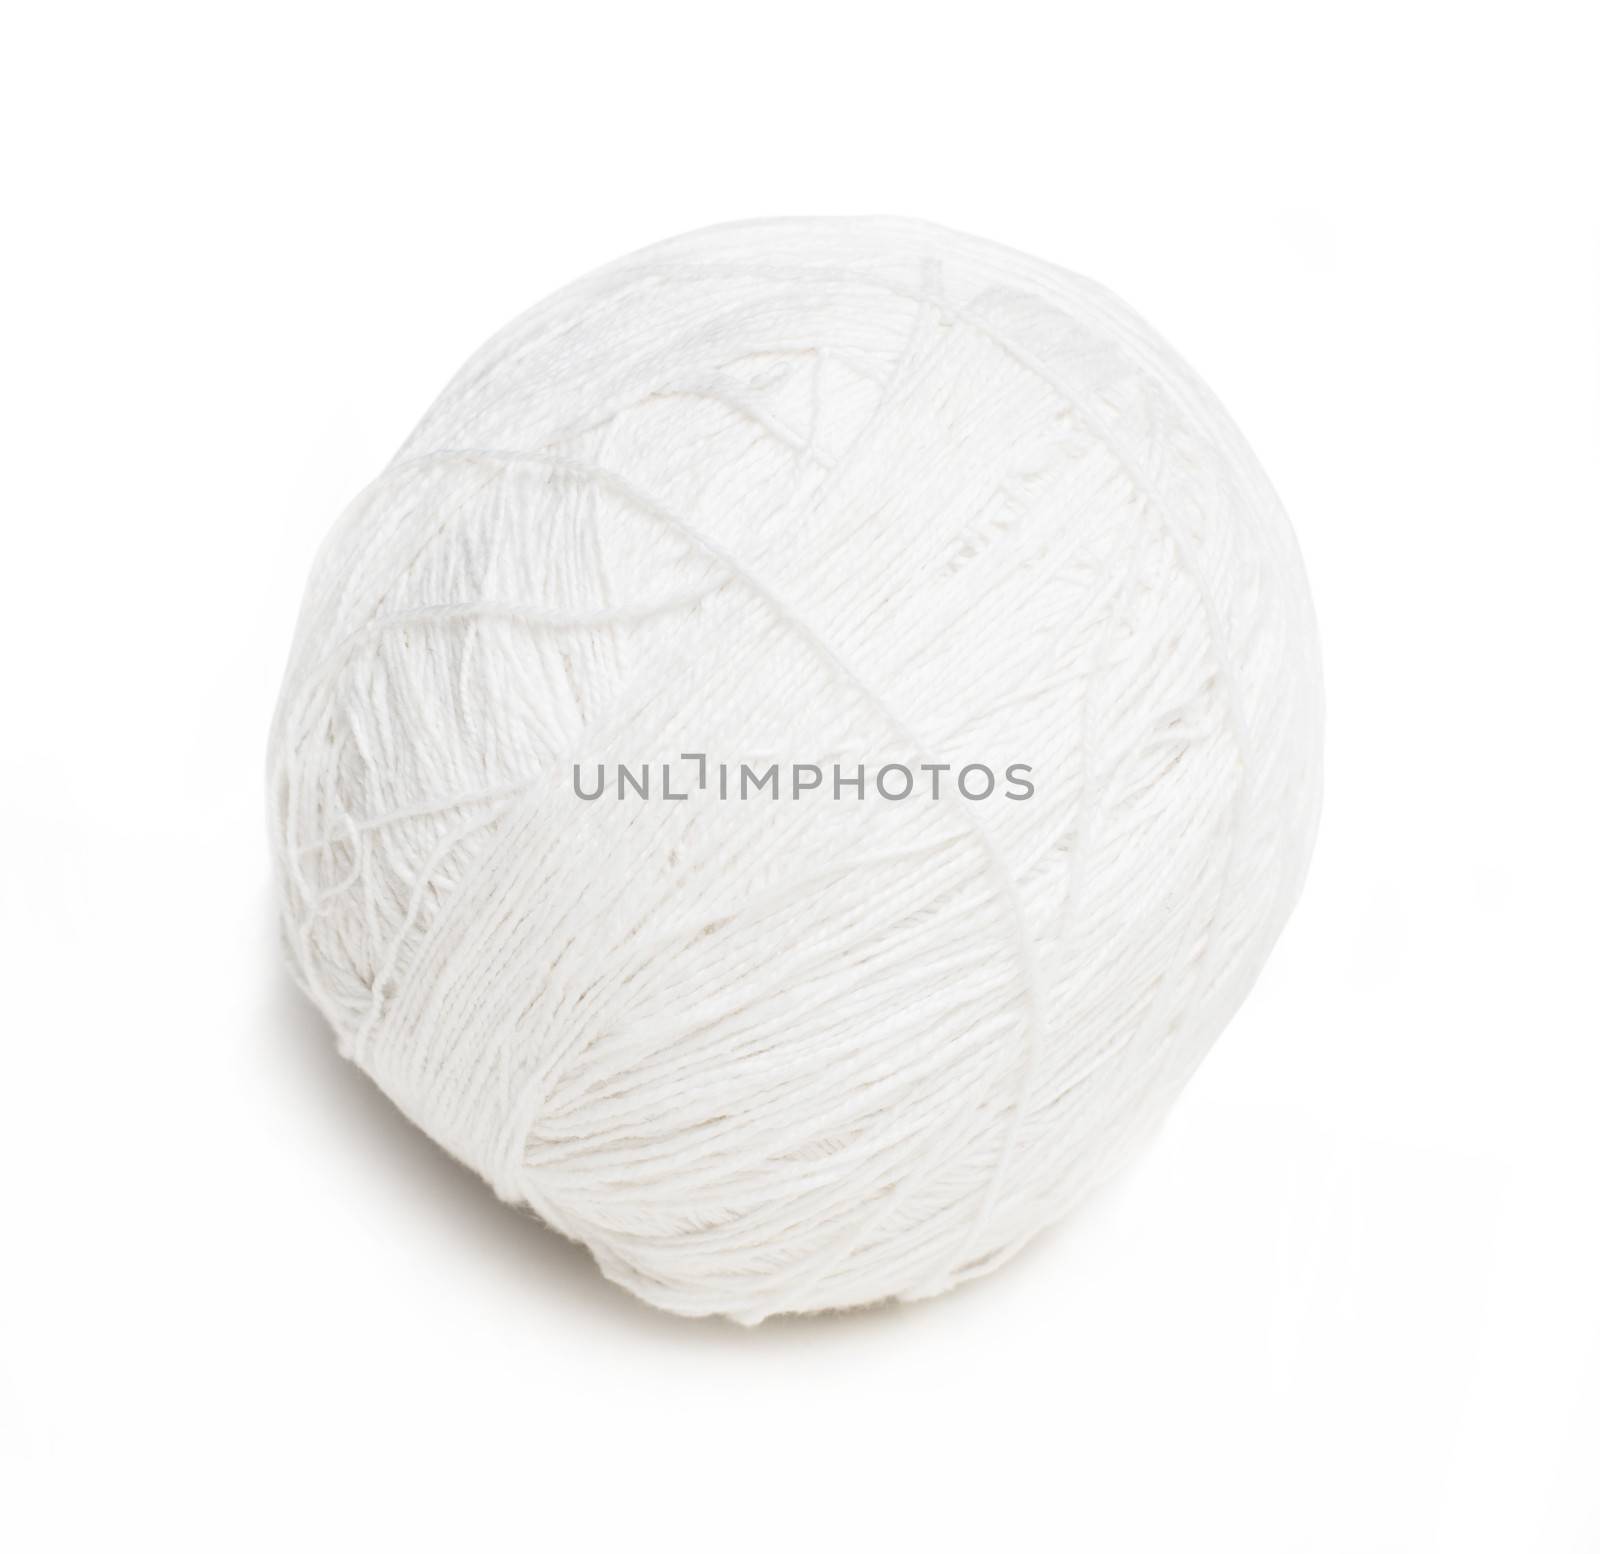 ball of white yarn by GekaSkr